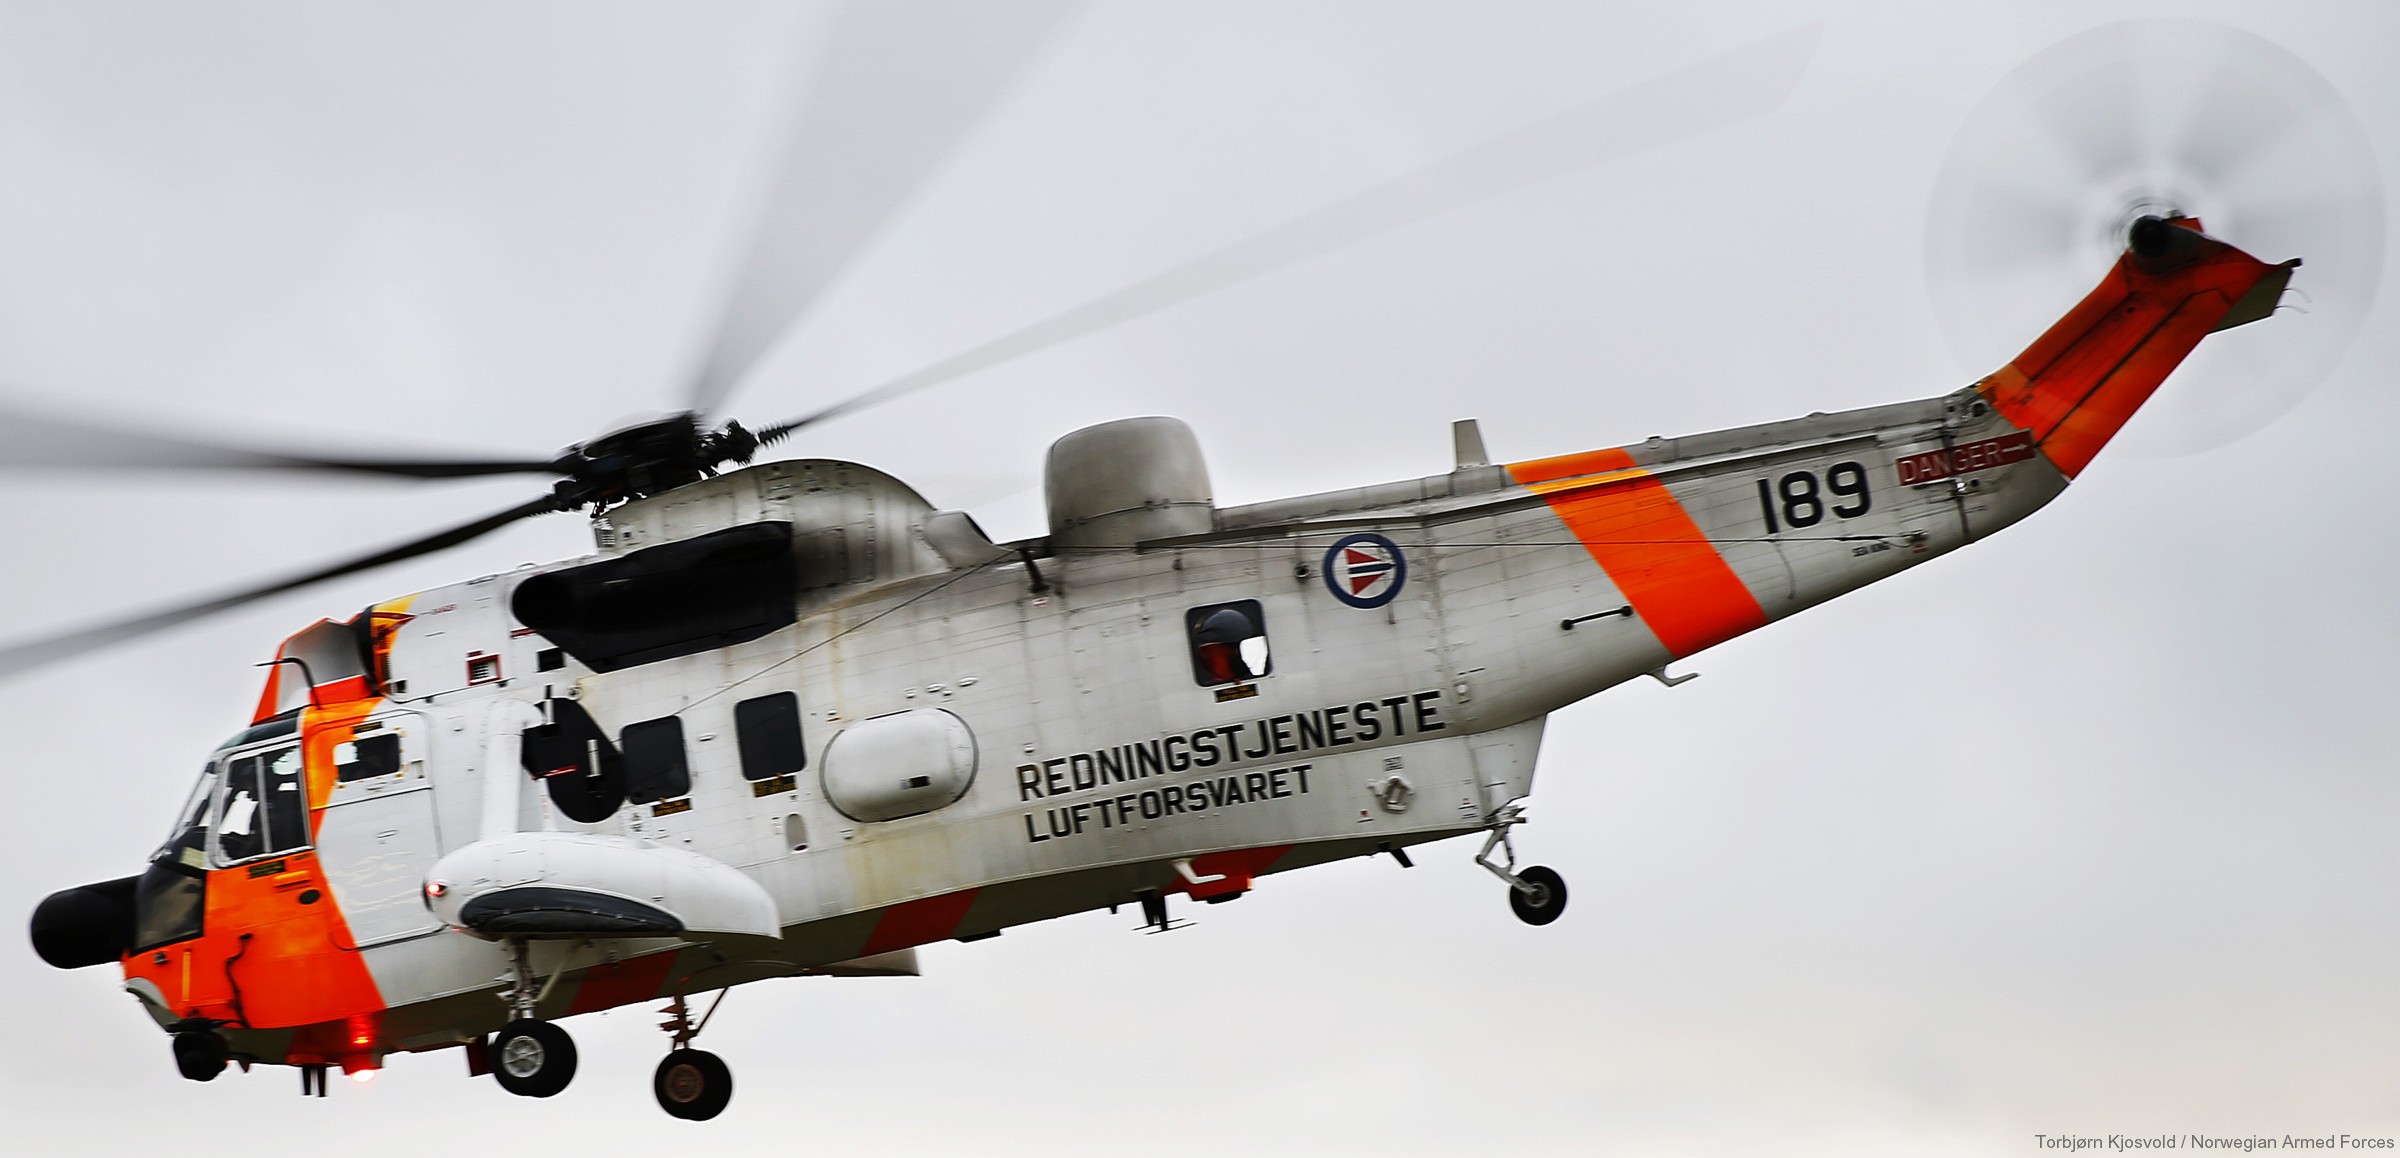 westland ws-61 sea king royal norwegian air force sar rescue 330 squadron skvadron luftforsvaret 189 03